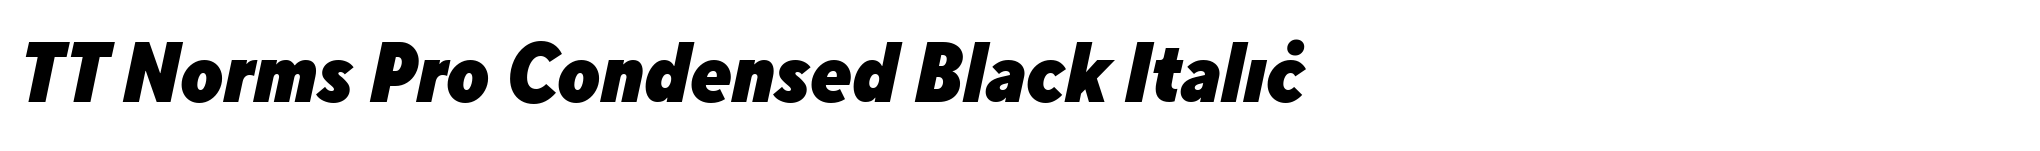 TT Norms Pro Condensed Black Italic image